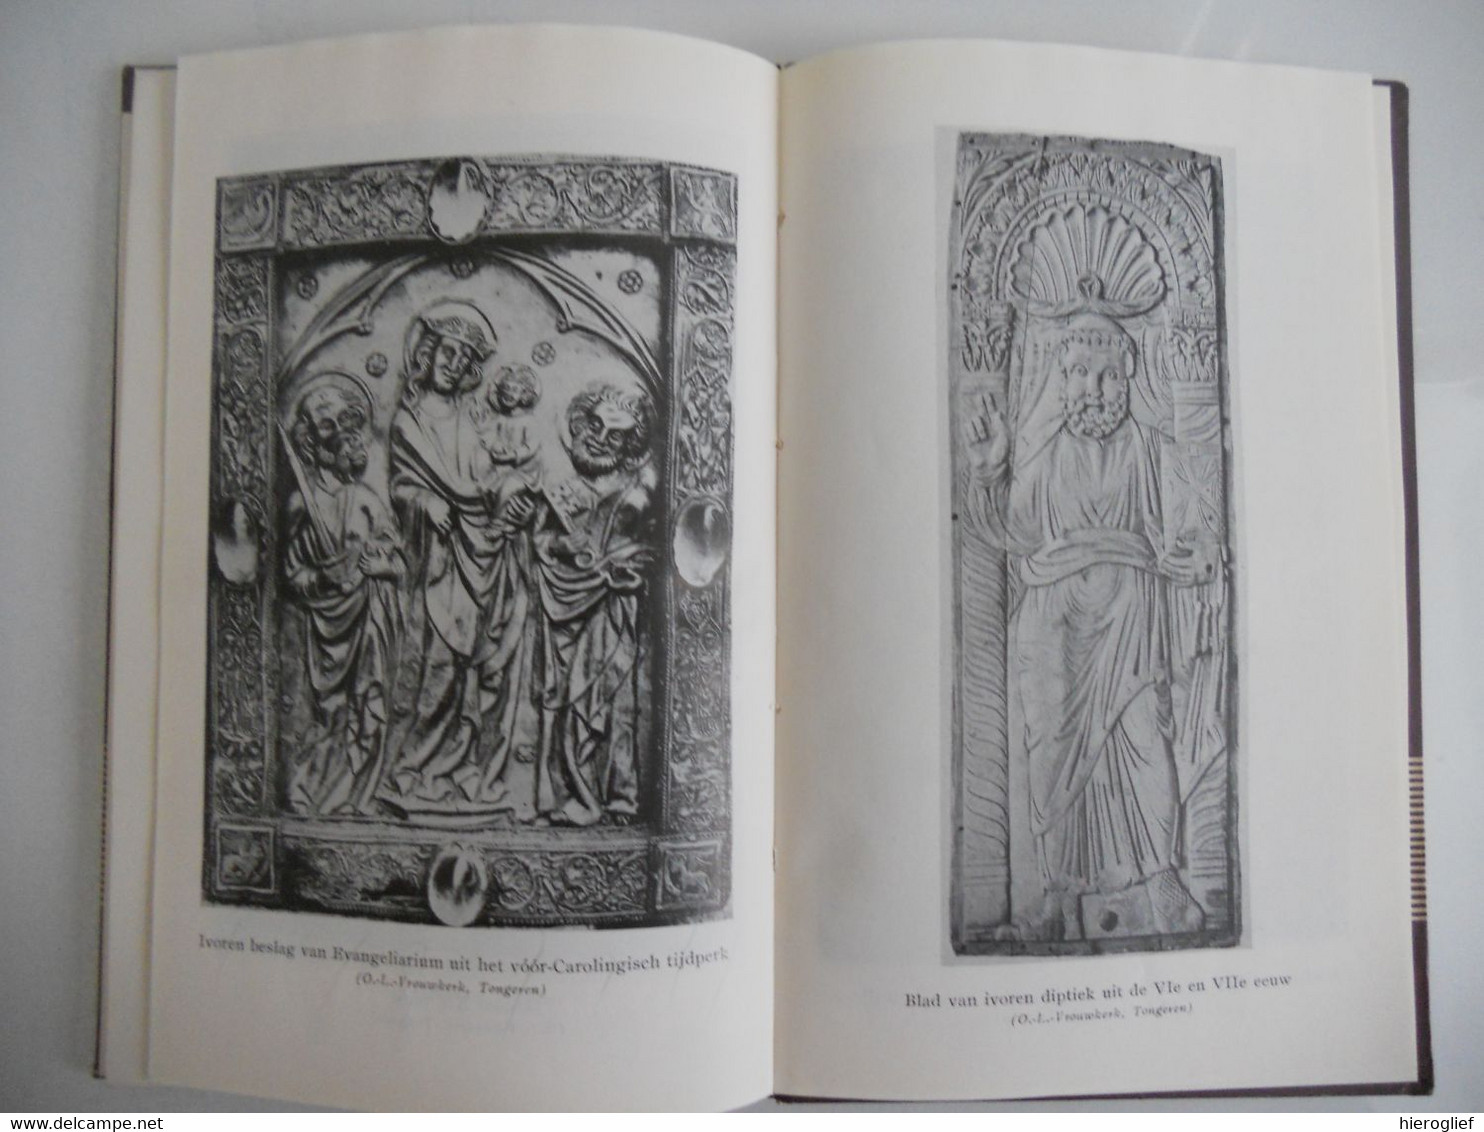 GODSDIENSTIG LEVEN OP VLAAMSE BODEM in 8ste en begin 9e eeuw door Tony Paapa met 14 illustraties DE SEIZOENEN 2